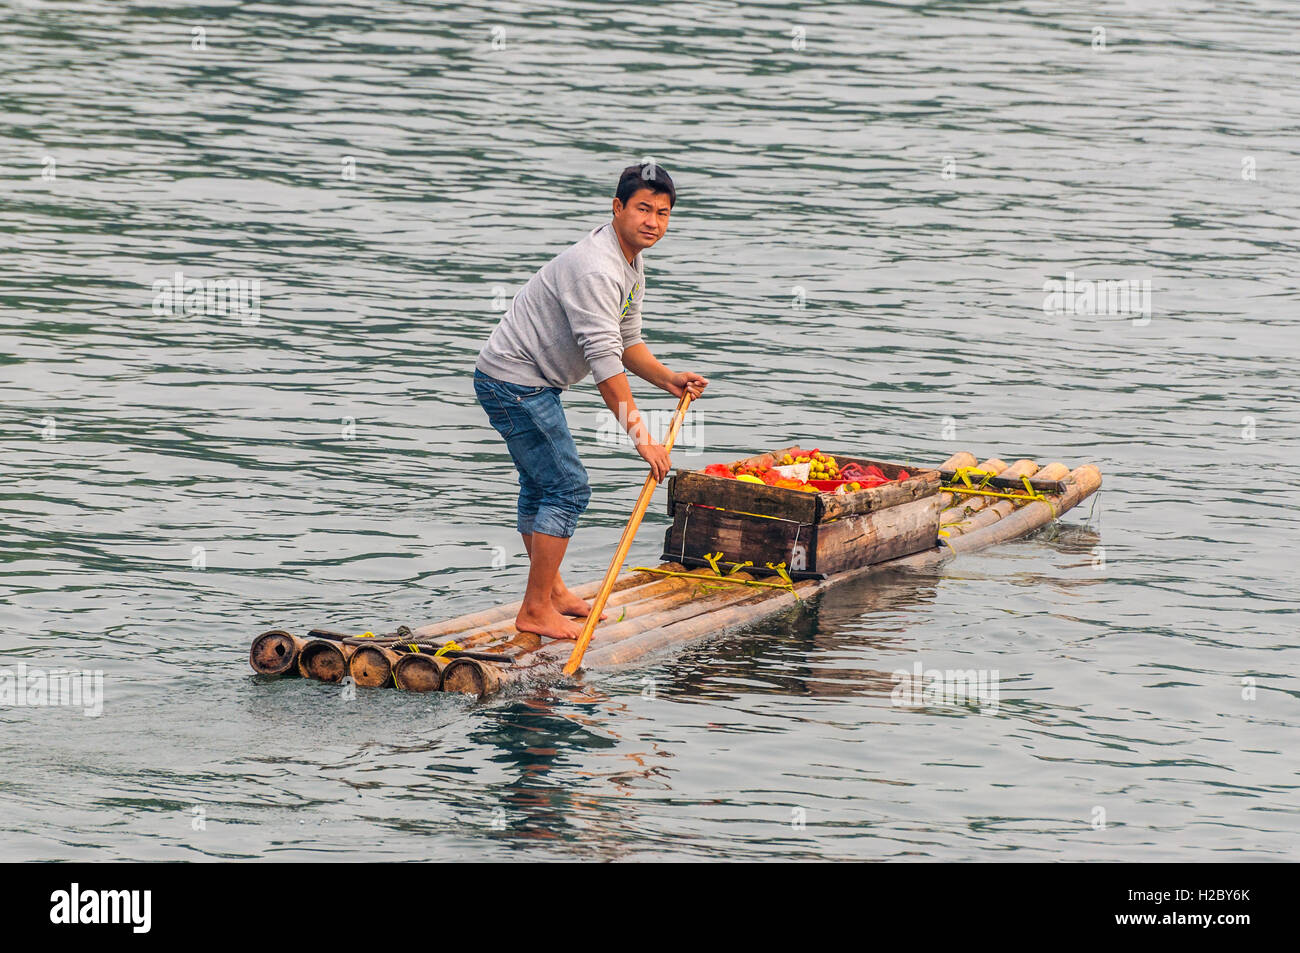 Vendeur de fruits sur son radeau flottant sur la rivière Li près de Yangshuo, Chine. Banque D'Images